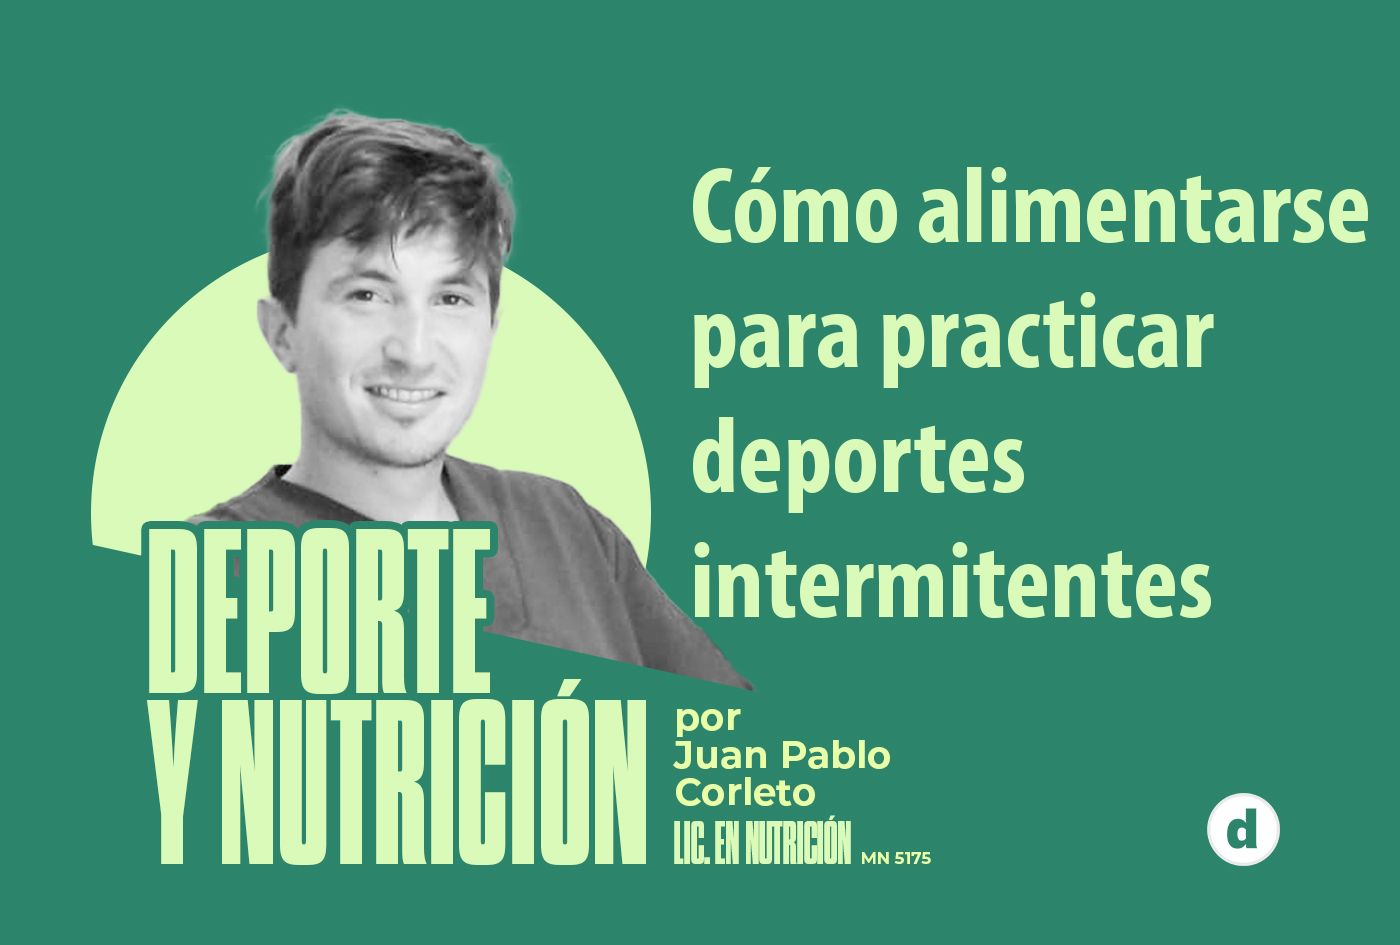 La columna del nutricionista Juan Pablo Corleto: “Cómo alimentarse para practicar deportes intermitentes”